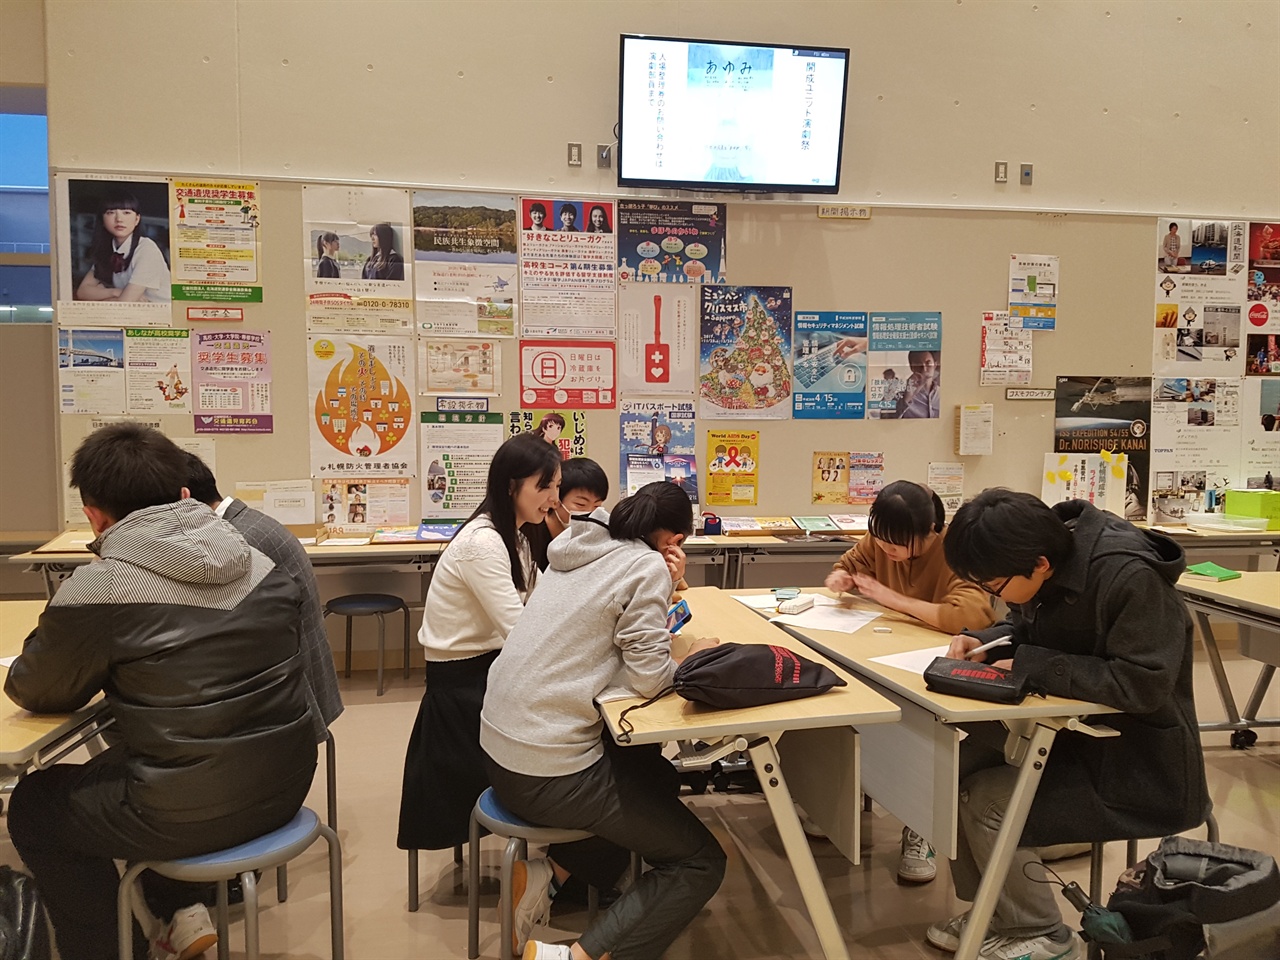 IB 프로그램을 도입한 일본 삿포로 가이세이 중등교육학교 학생들이 개방형 교무실 앞 쉼터에서 교사와 소통하는 장면.